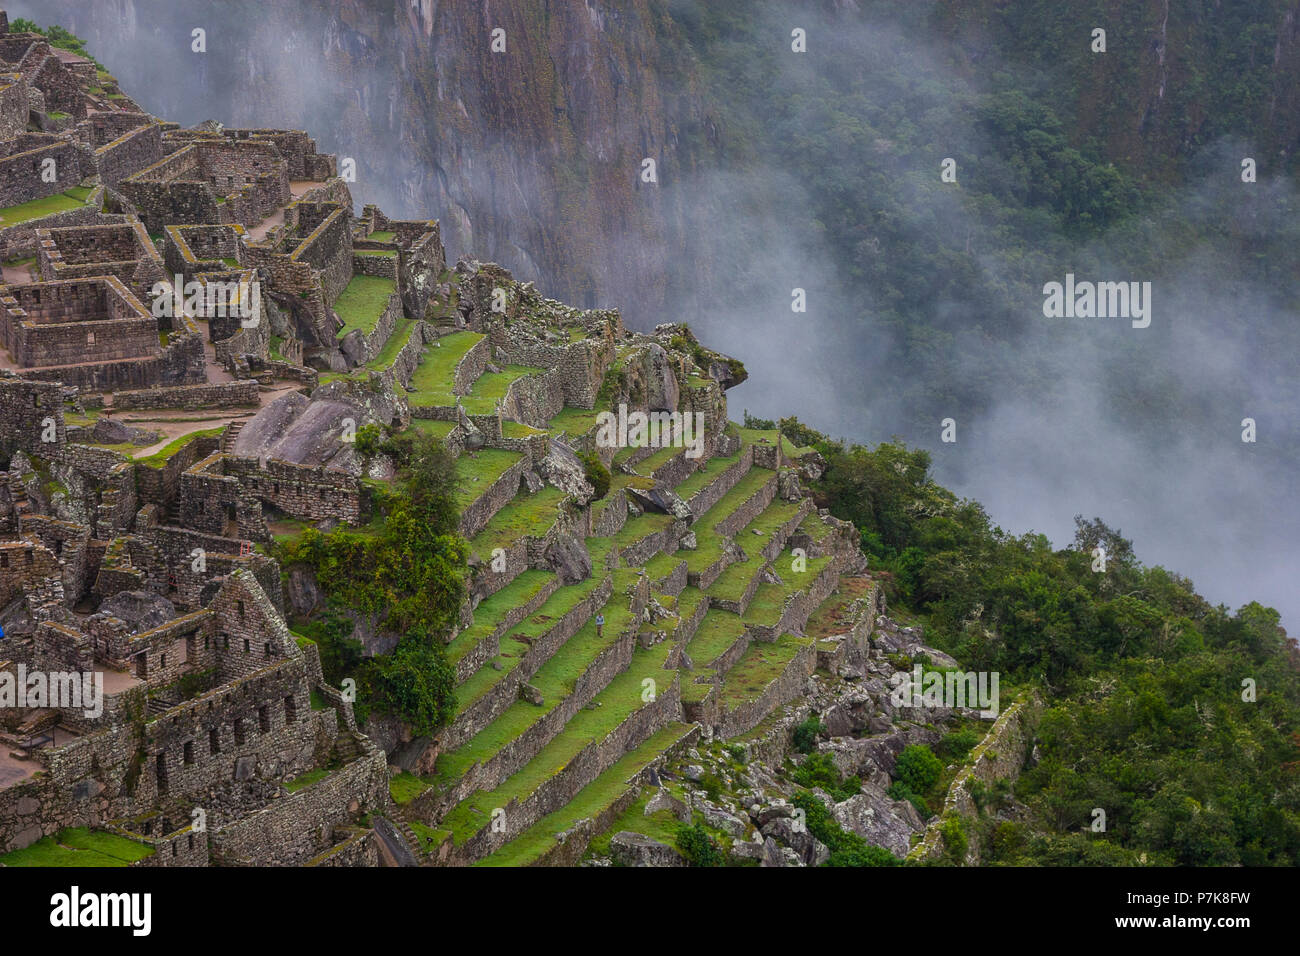 Bella immagine di sfondo di pietre antiche rovine di Machu Picchu nella natura selvaggia delle montagne con le nuvole. Il Perù. N. persone. Foto Stock